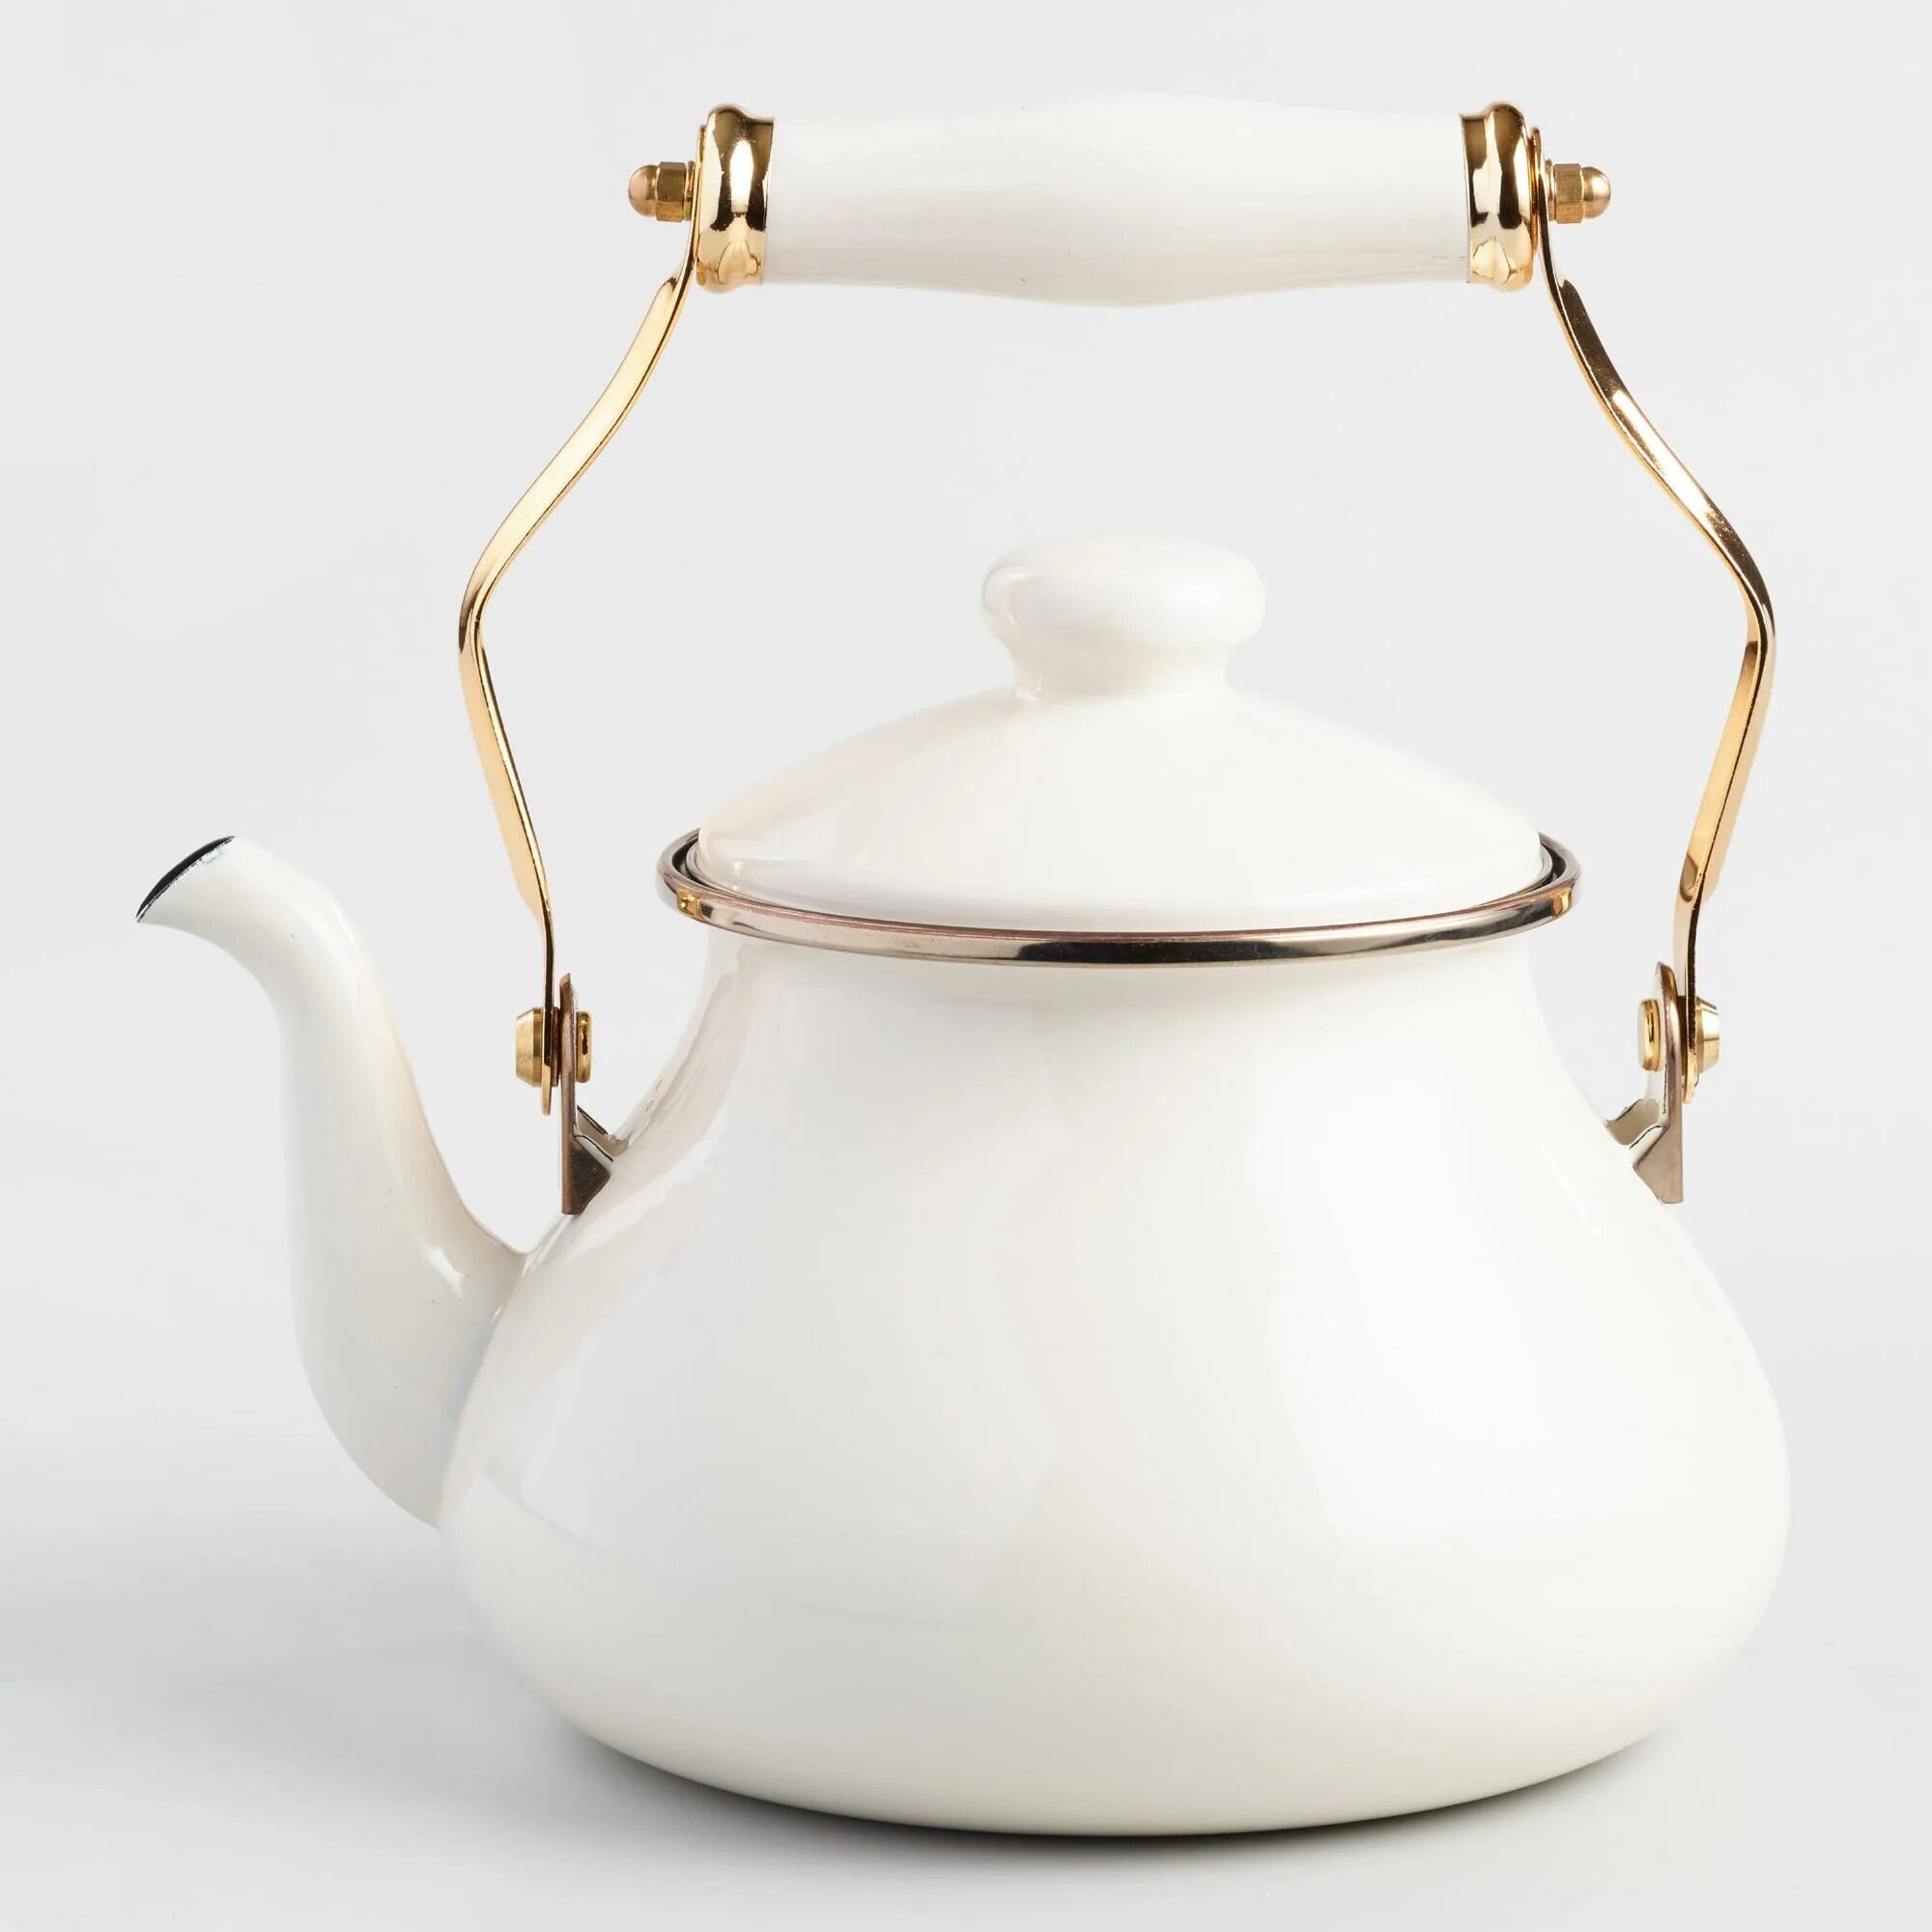 Чайник заварочный Лефард. Смег чайник белый с золотом. Чайник Кайзер ретро. Чайник белый для газовой плиты.